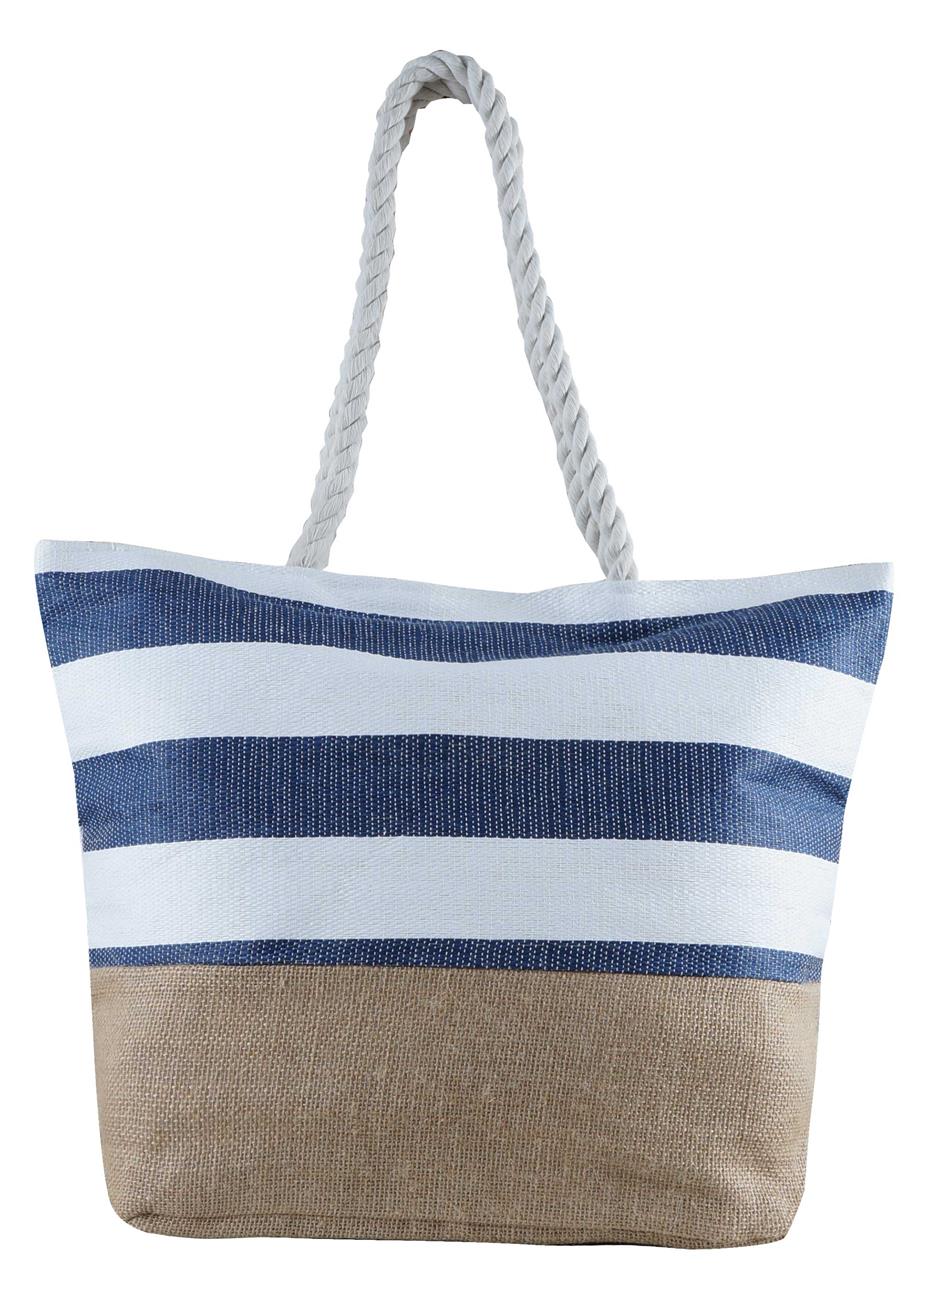 Τσάντα θαλάσσης ριγέ με εσωτερική θήκη και φερμουάρ. Summer collection.